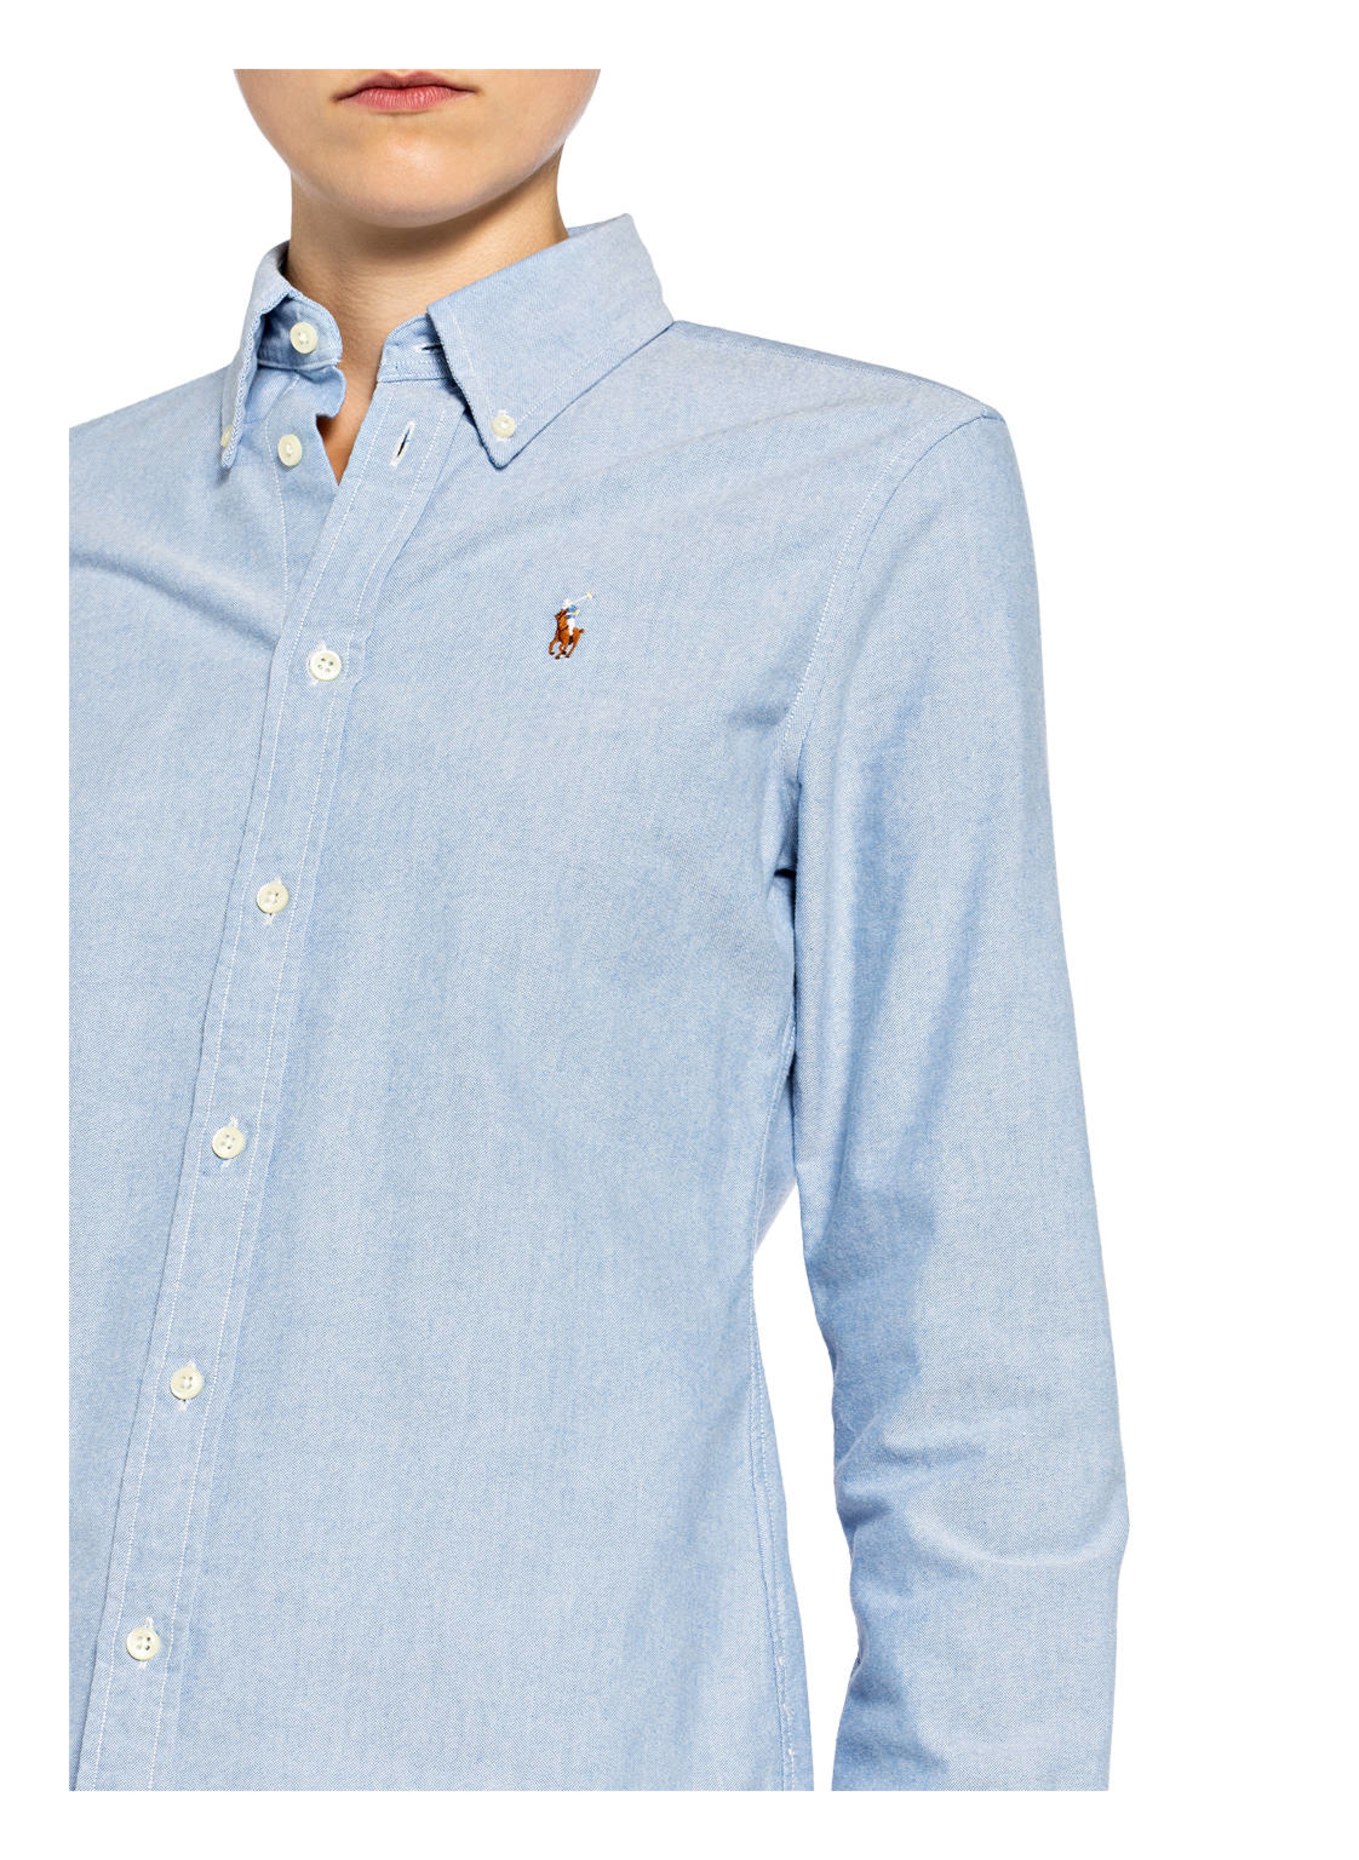 POLO RALPH LAUREN Shirt blouse, Color: LIGHT BLUE (Image 4)